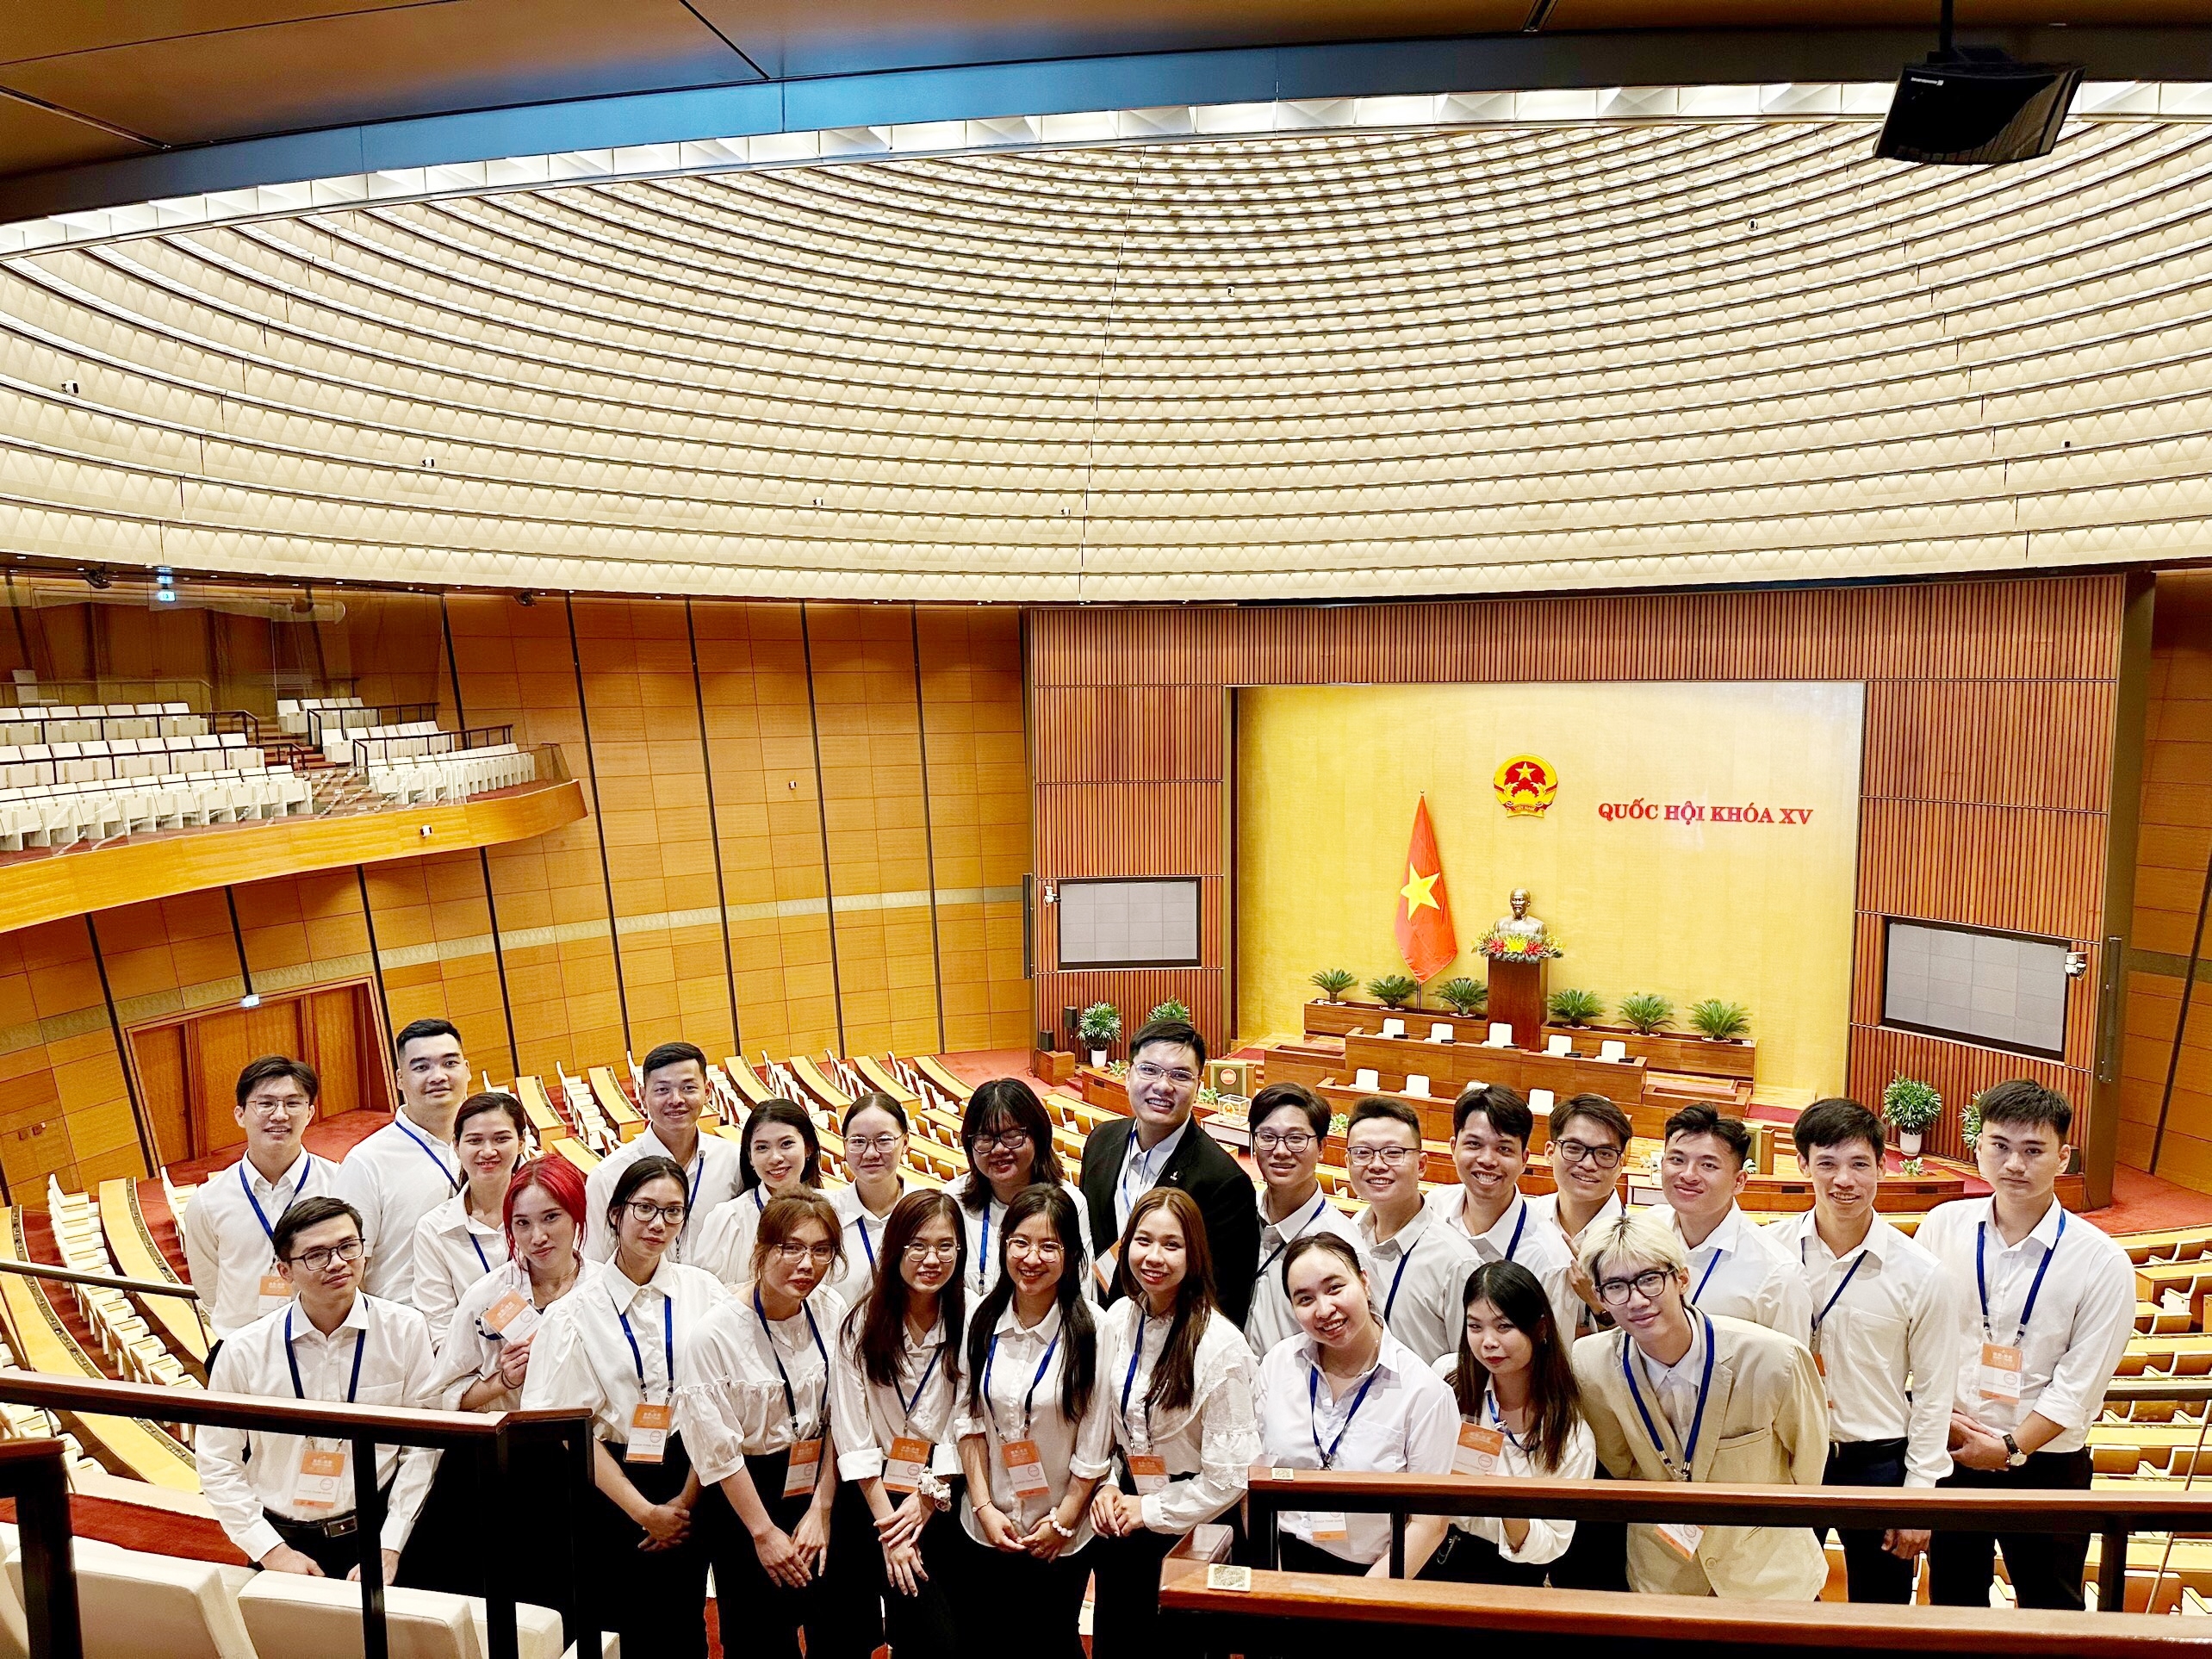 Экскурсия для юных патриотов в здании Национального собрания Вьетнама